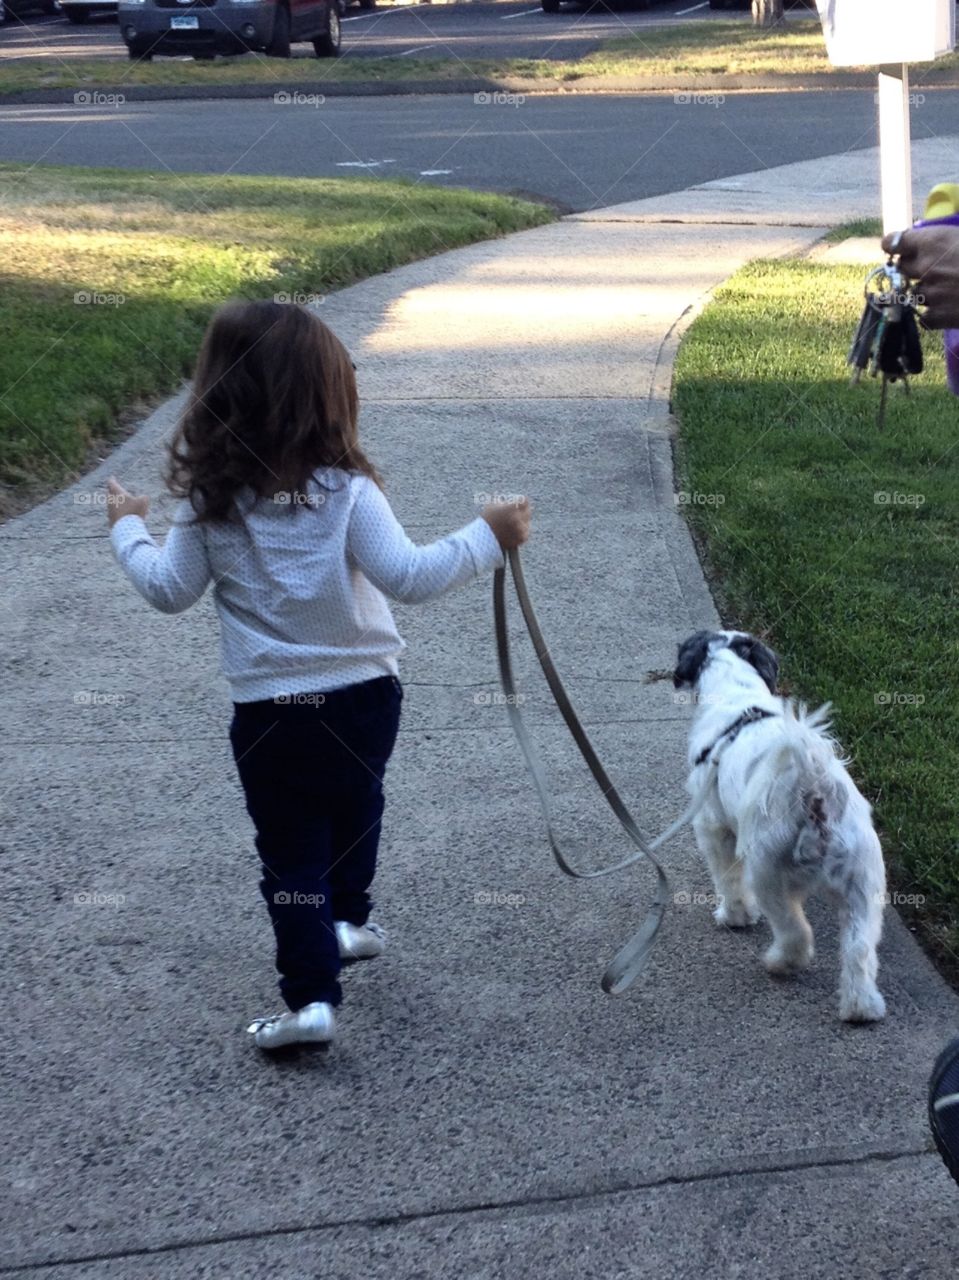 Walking her dog 